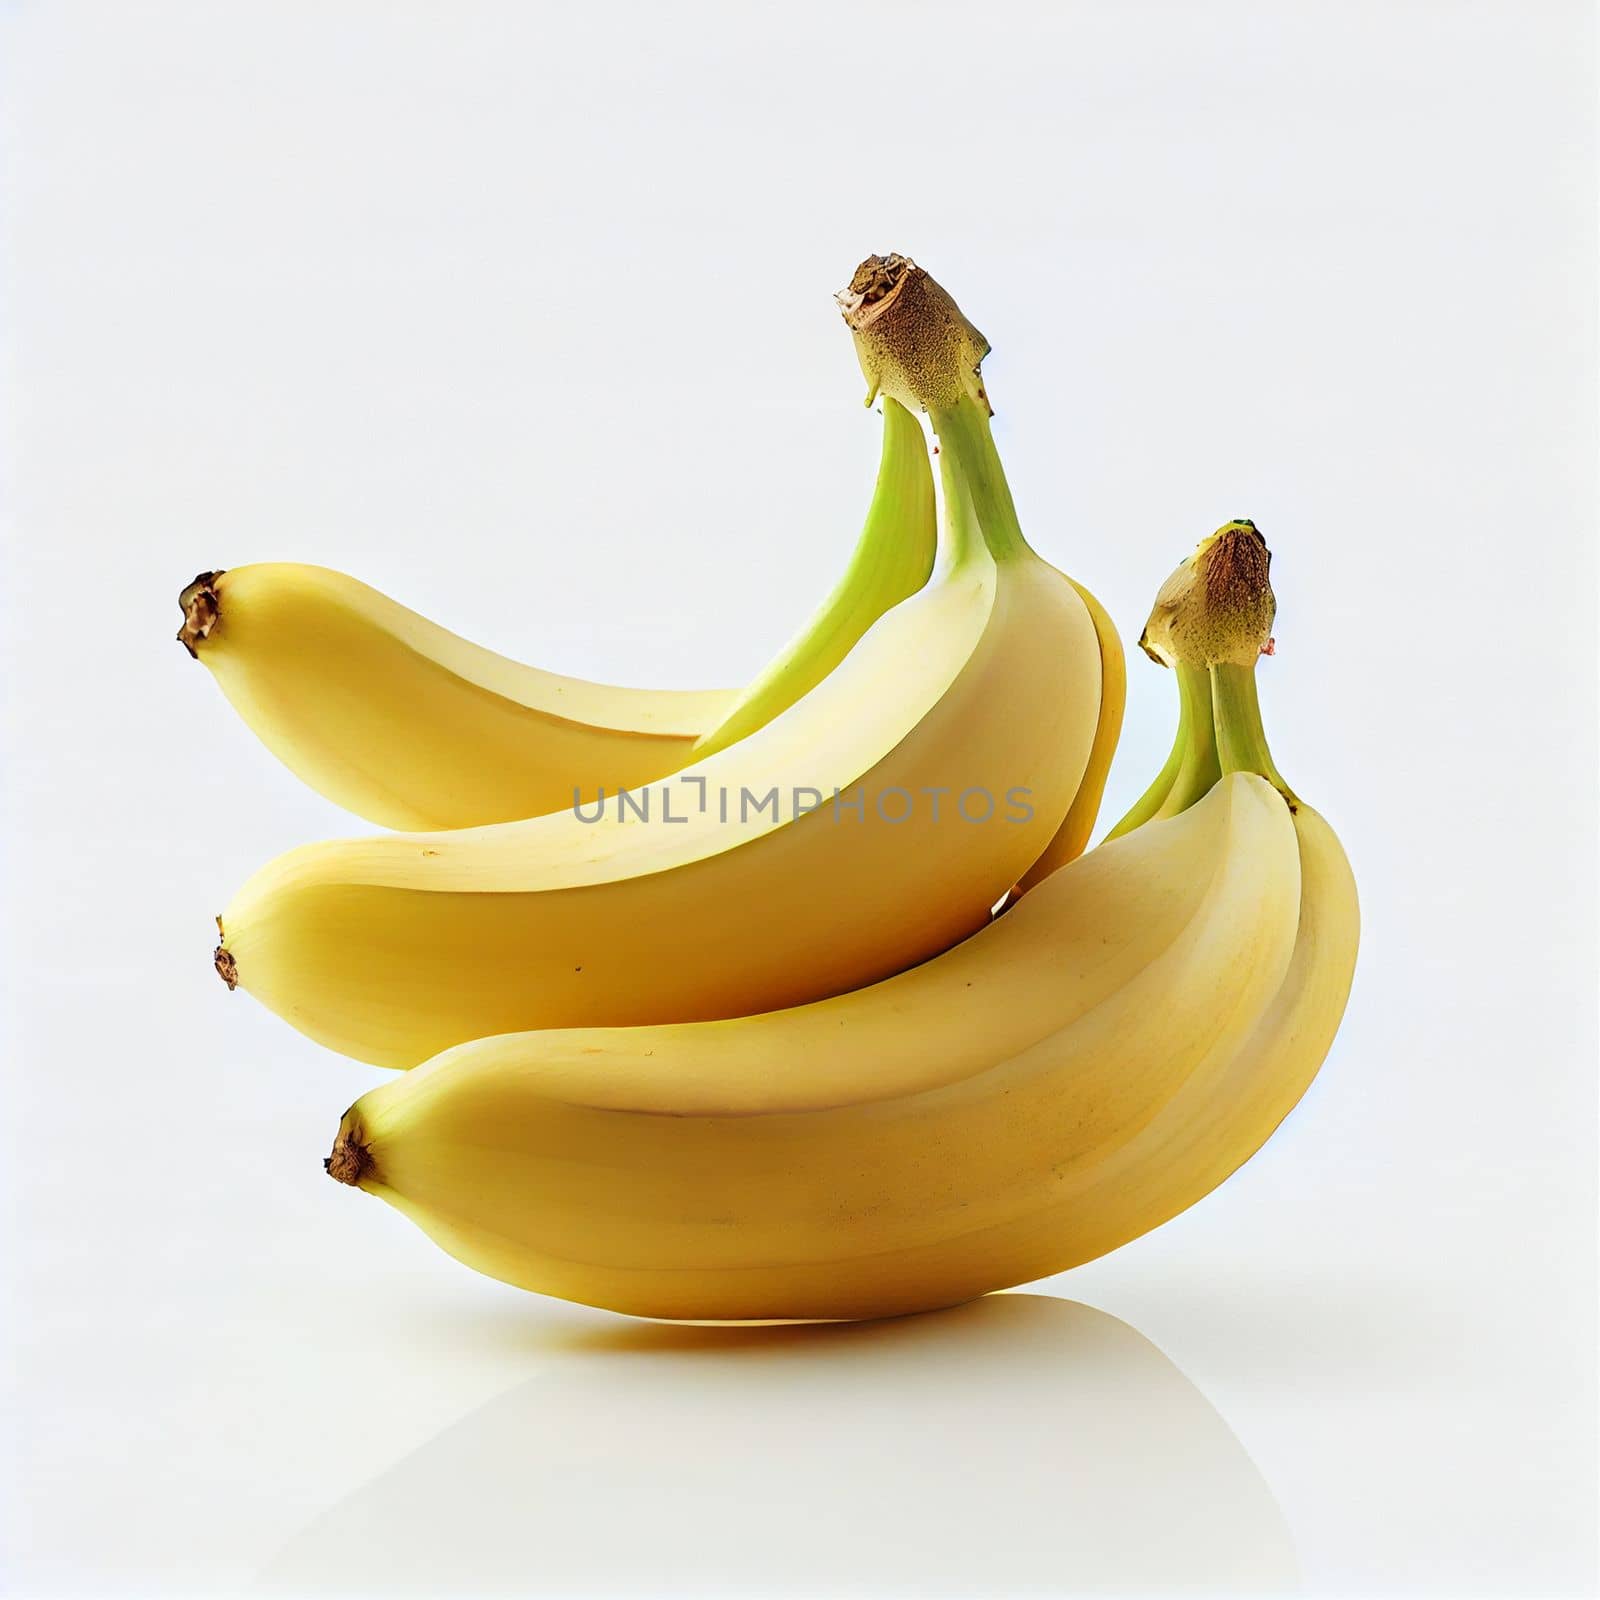 Banana fruit isolated on white background.